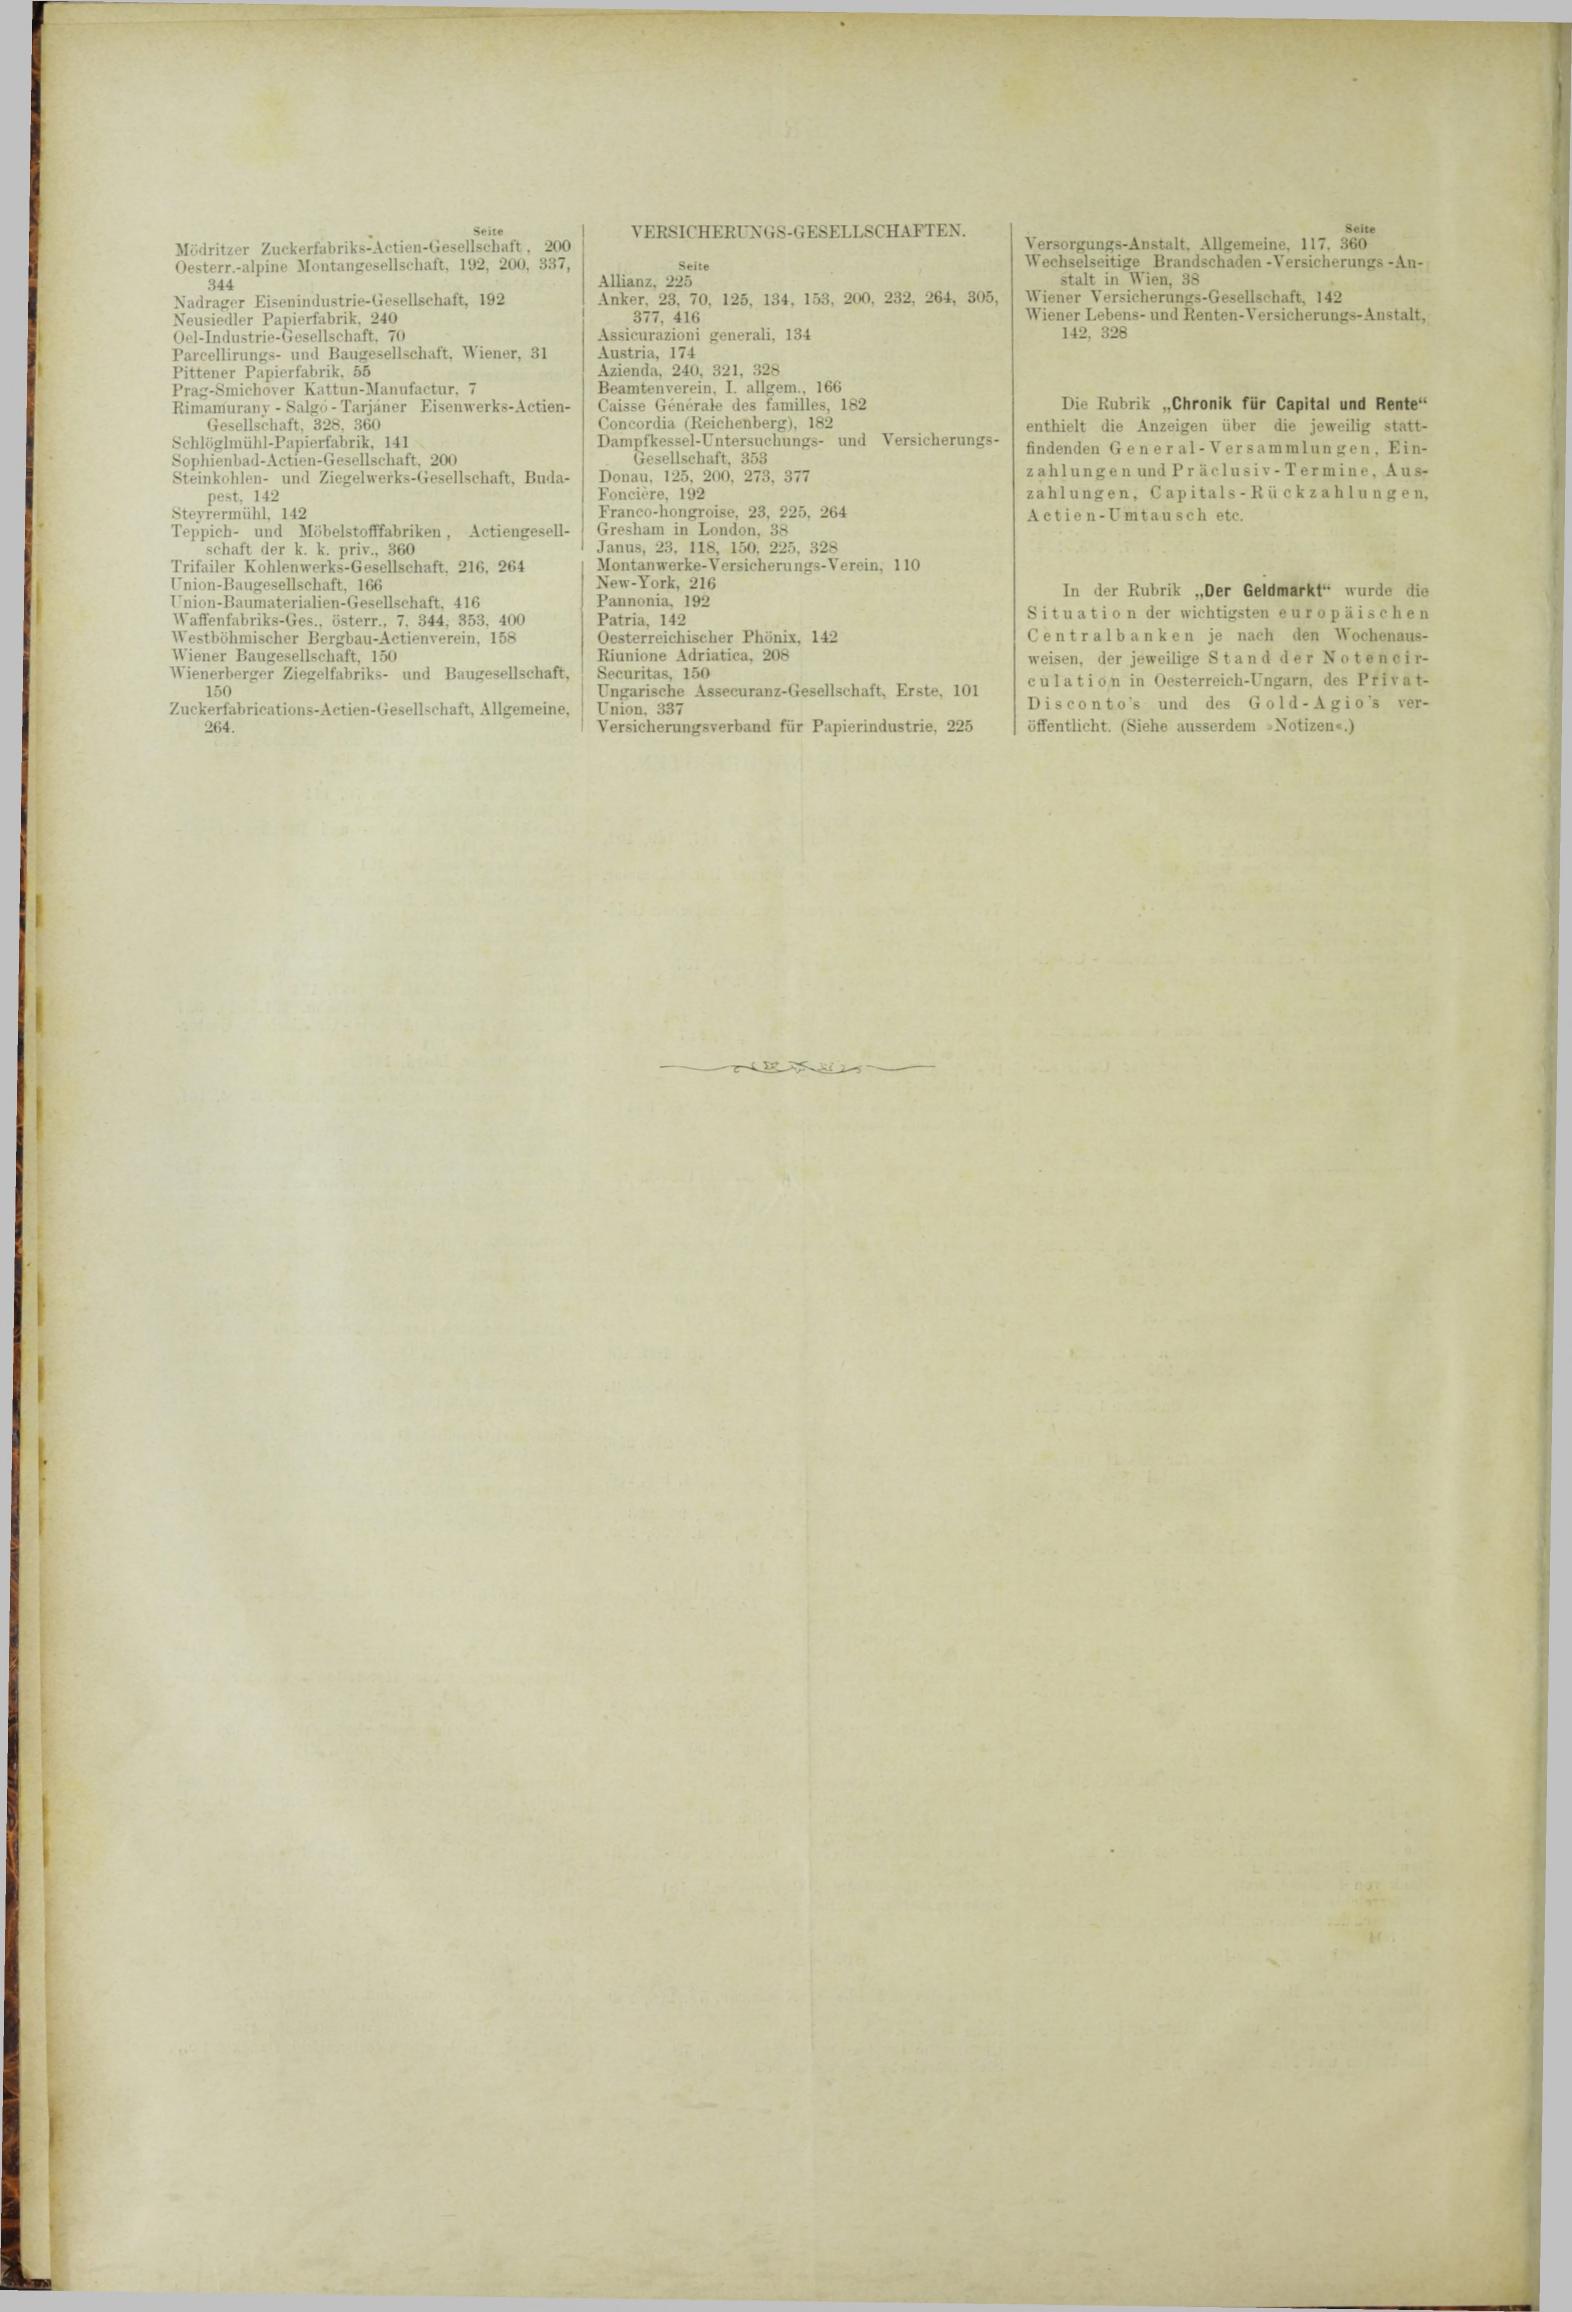 Der Tresor 16.08.1883 - Seite 12